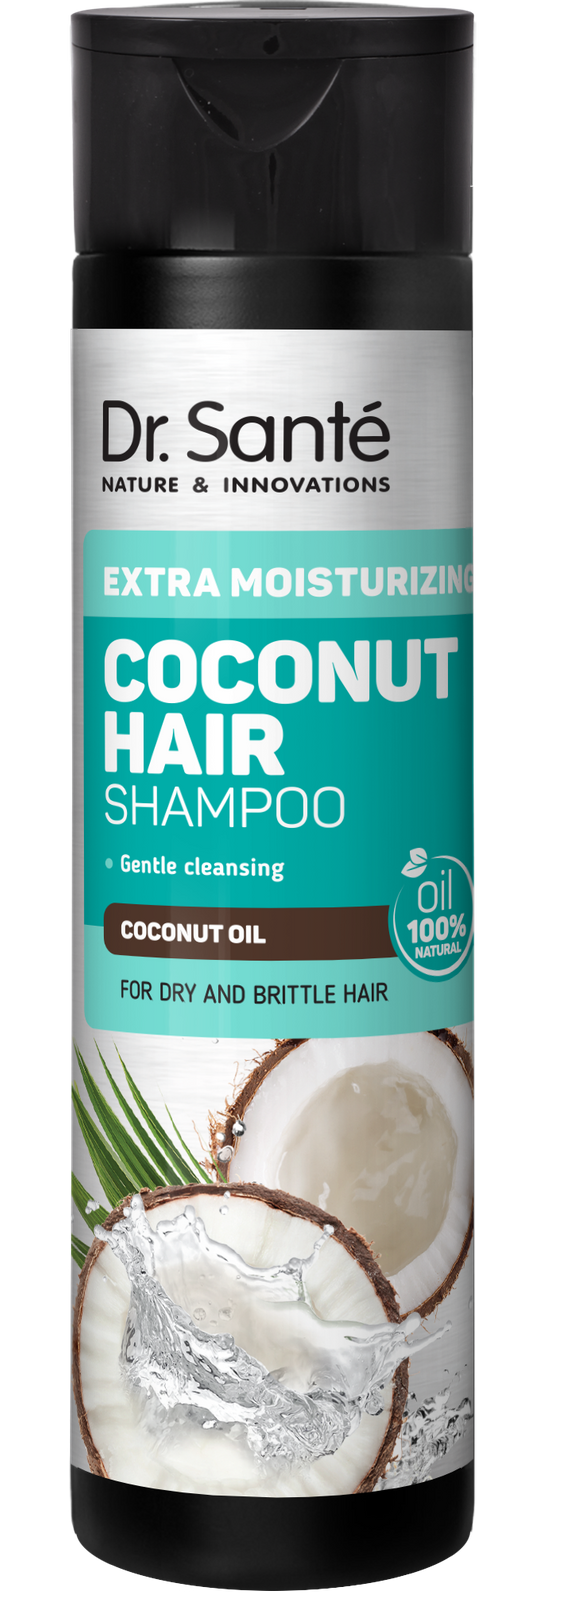 coconut hair szampon